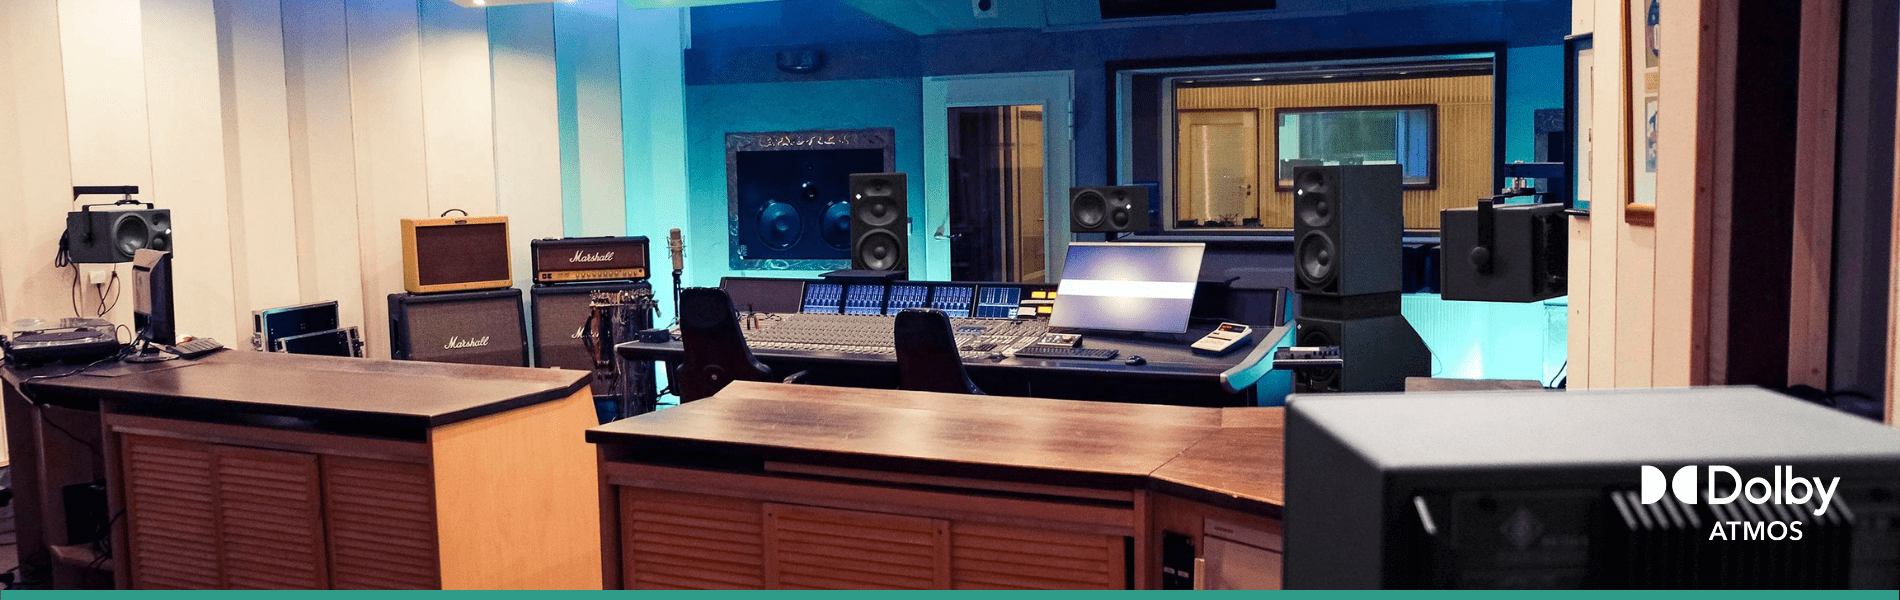 Weitwinkelperspektive der Dolby Atmos Regie von Studio 1 der Peppermint Park Studios